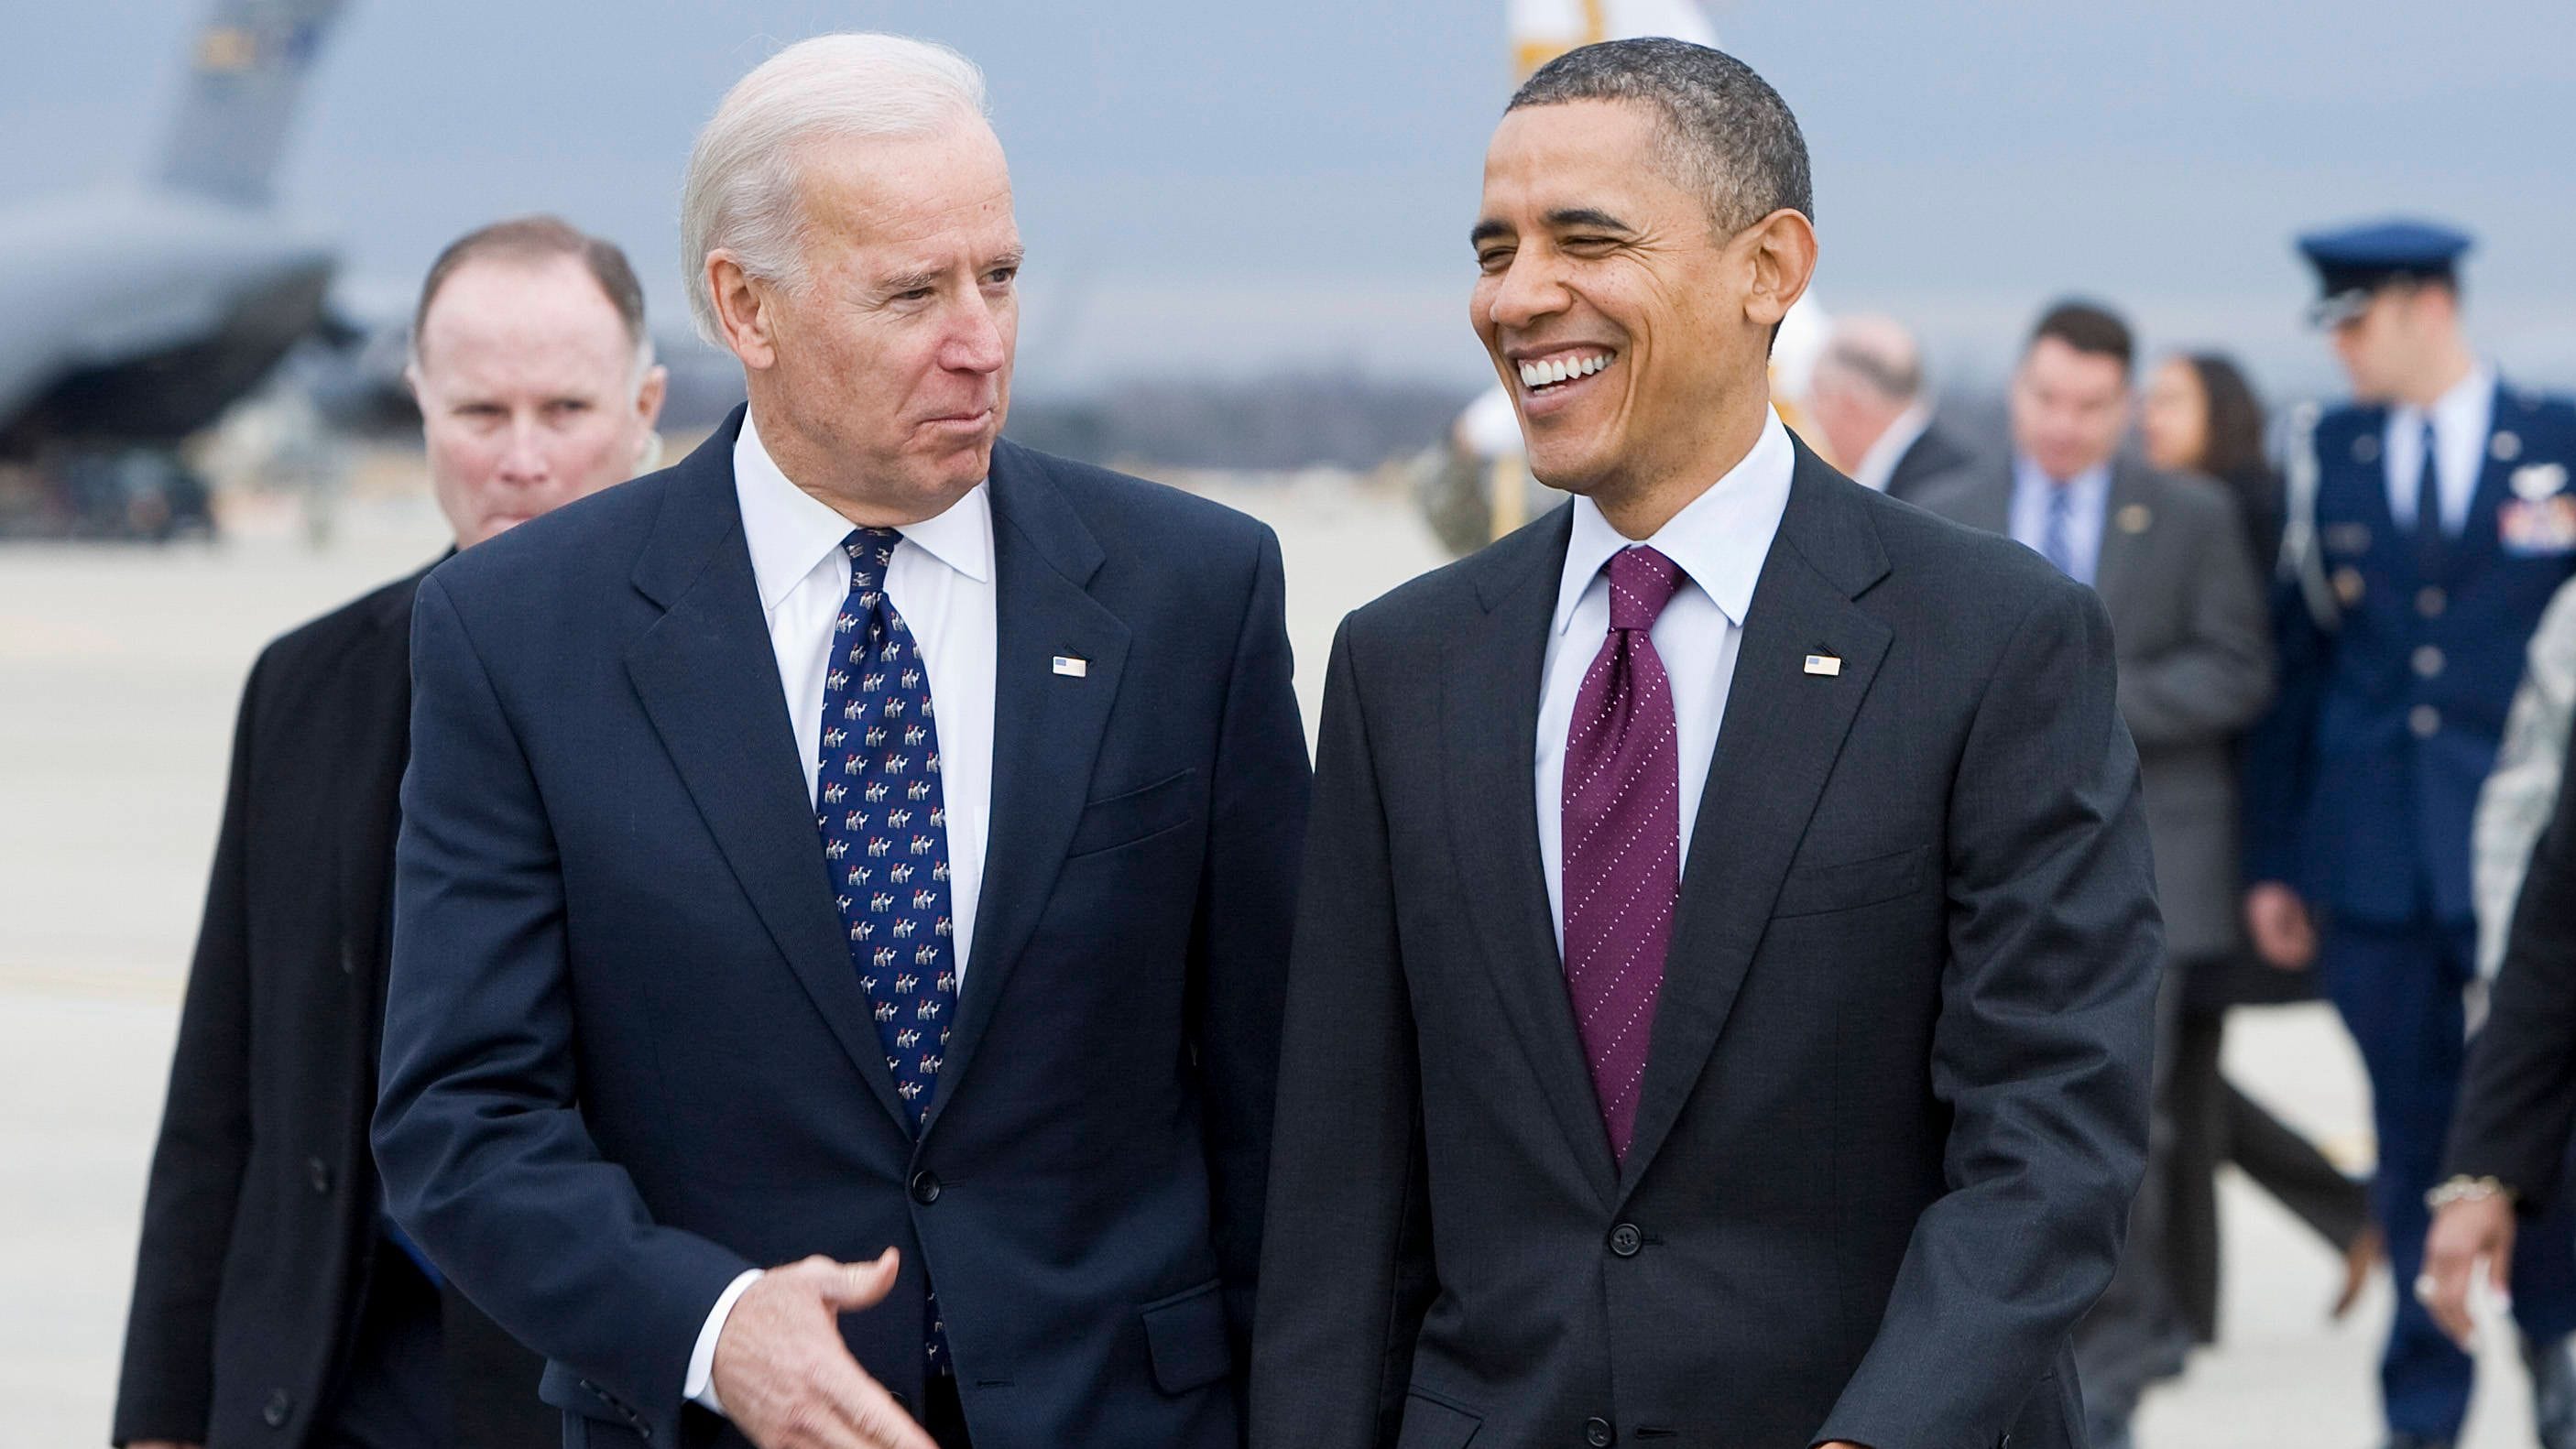 Biden-Kampagne mit prominenterUnterstützung | US-Wahl im Newsblog